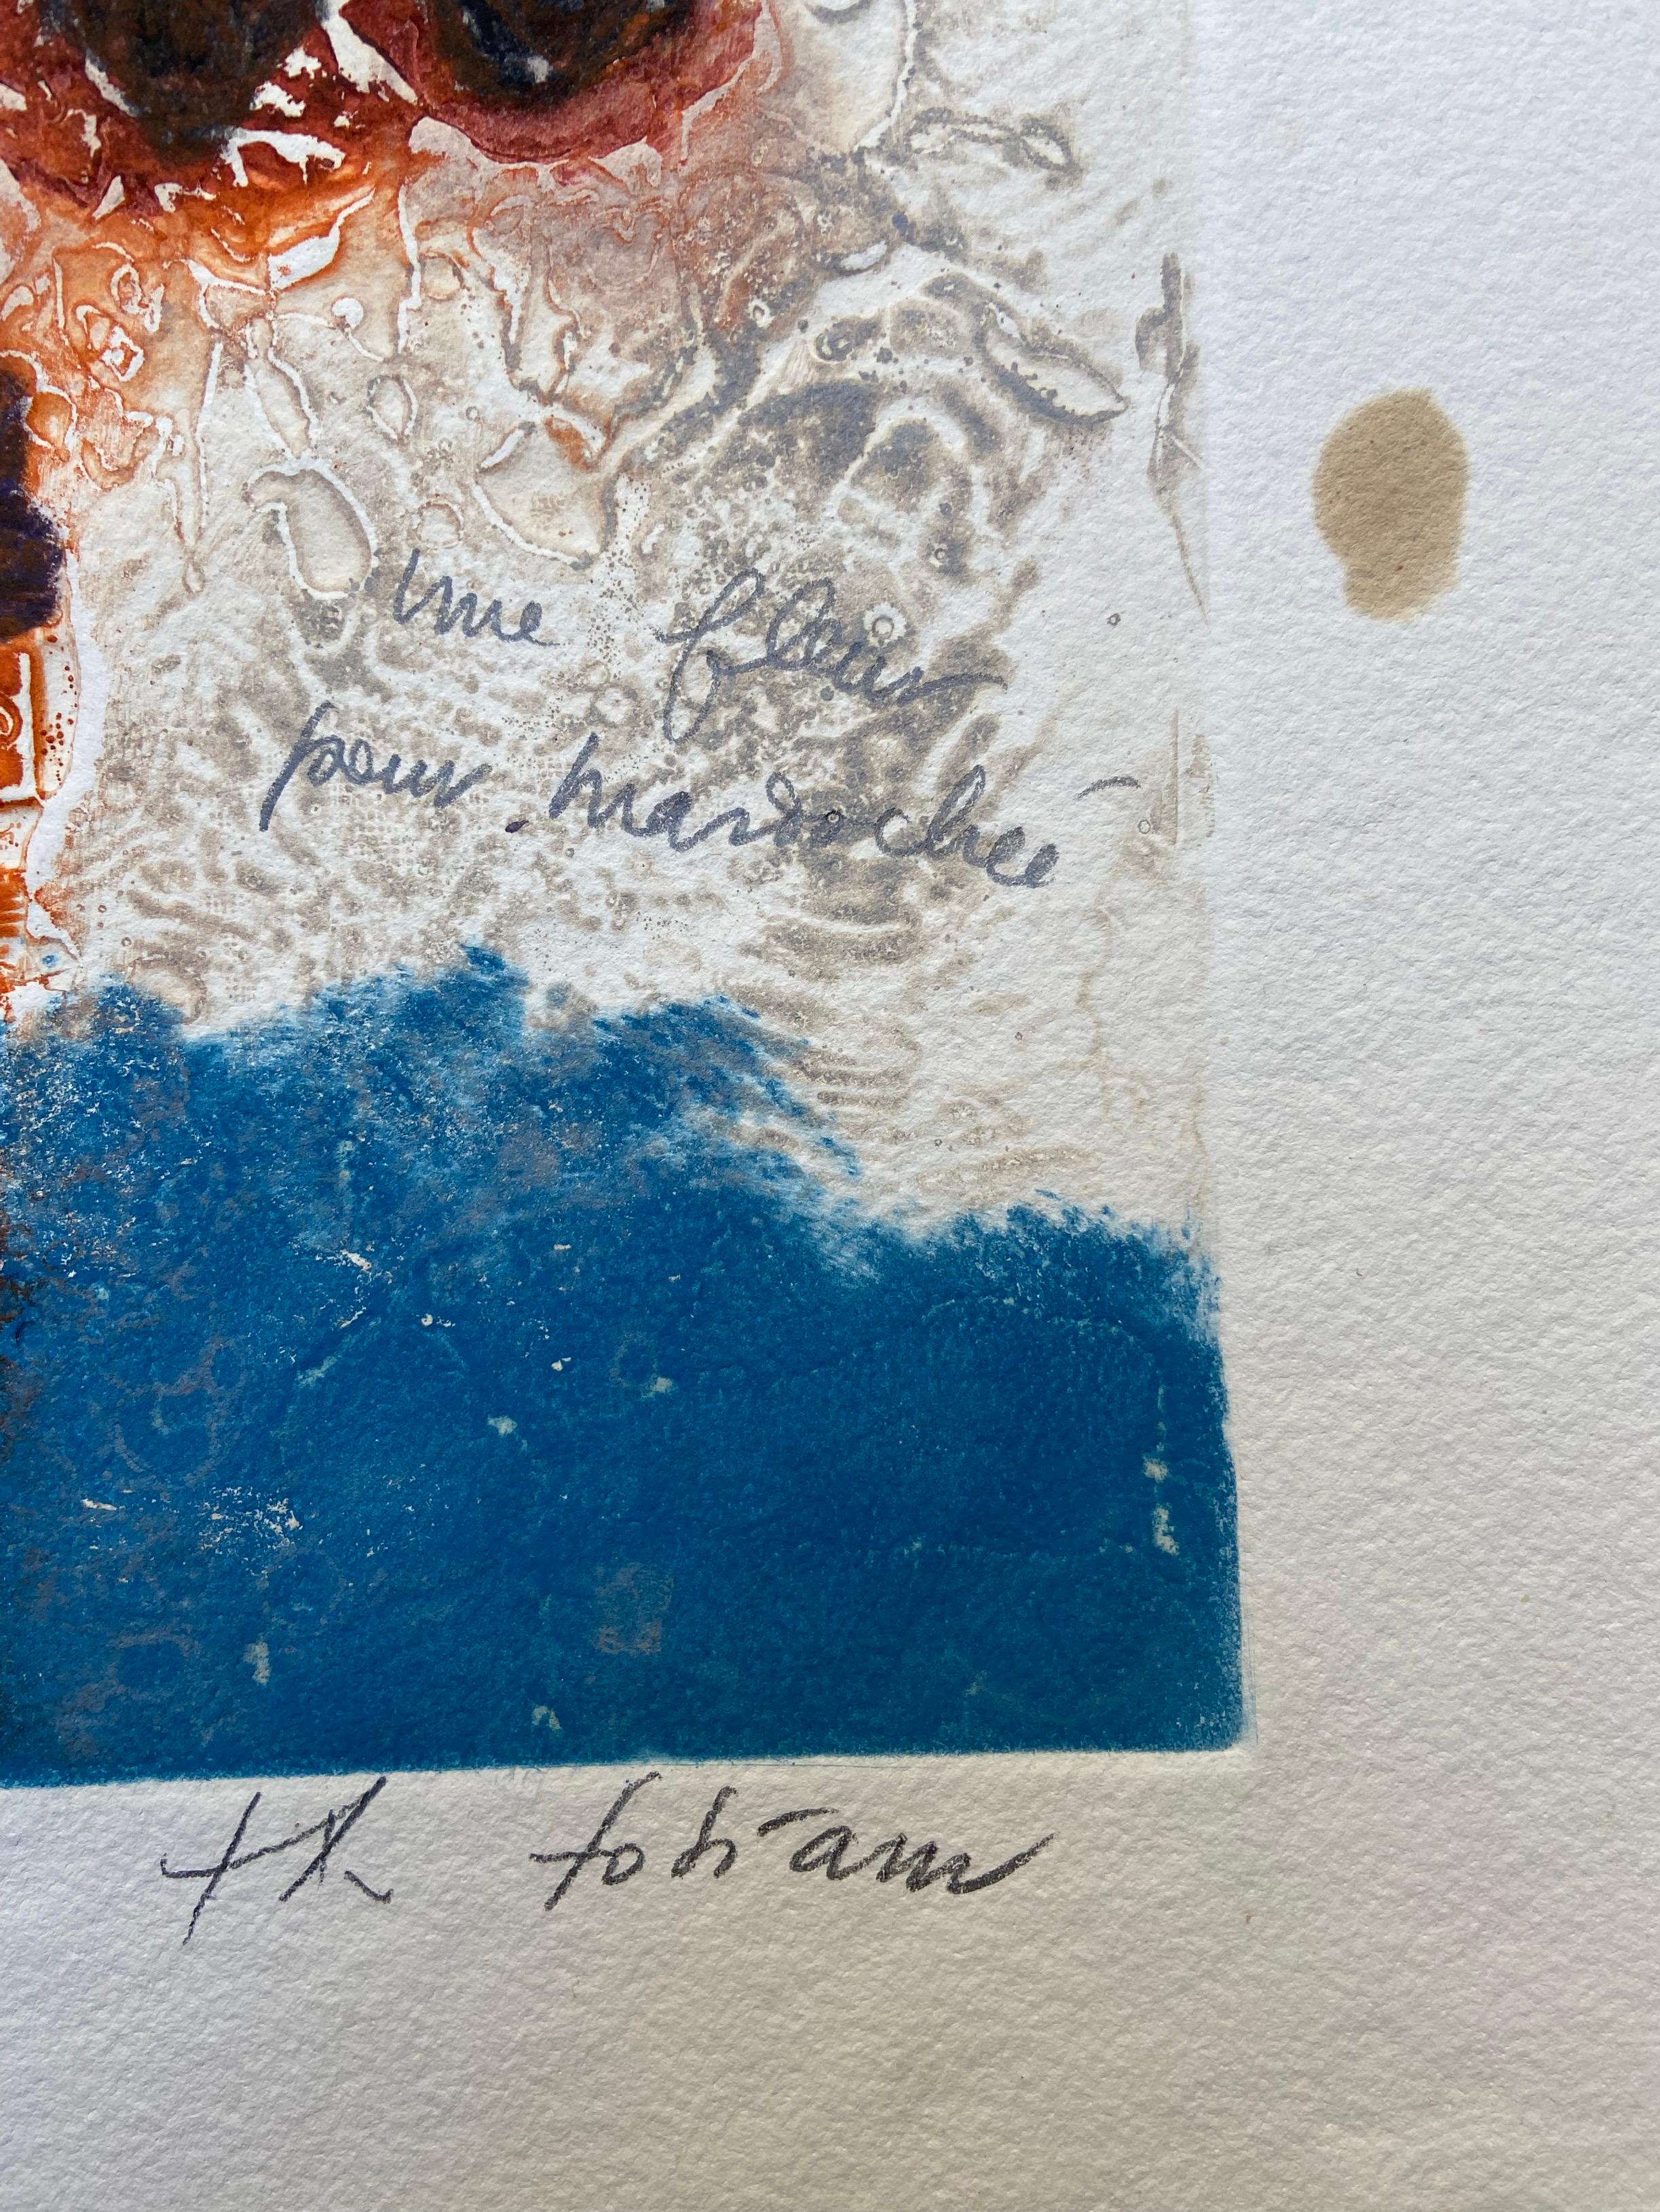 Theo Tobiasse - une fleur pour Mordecai
1980
65x67cm
Gravure au carborundum en couleur sur papier 
Signé, dédicacé et annoté 